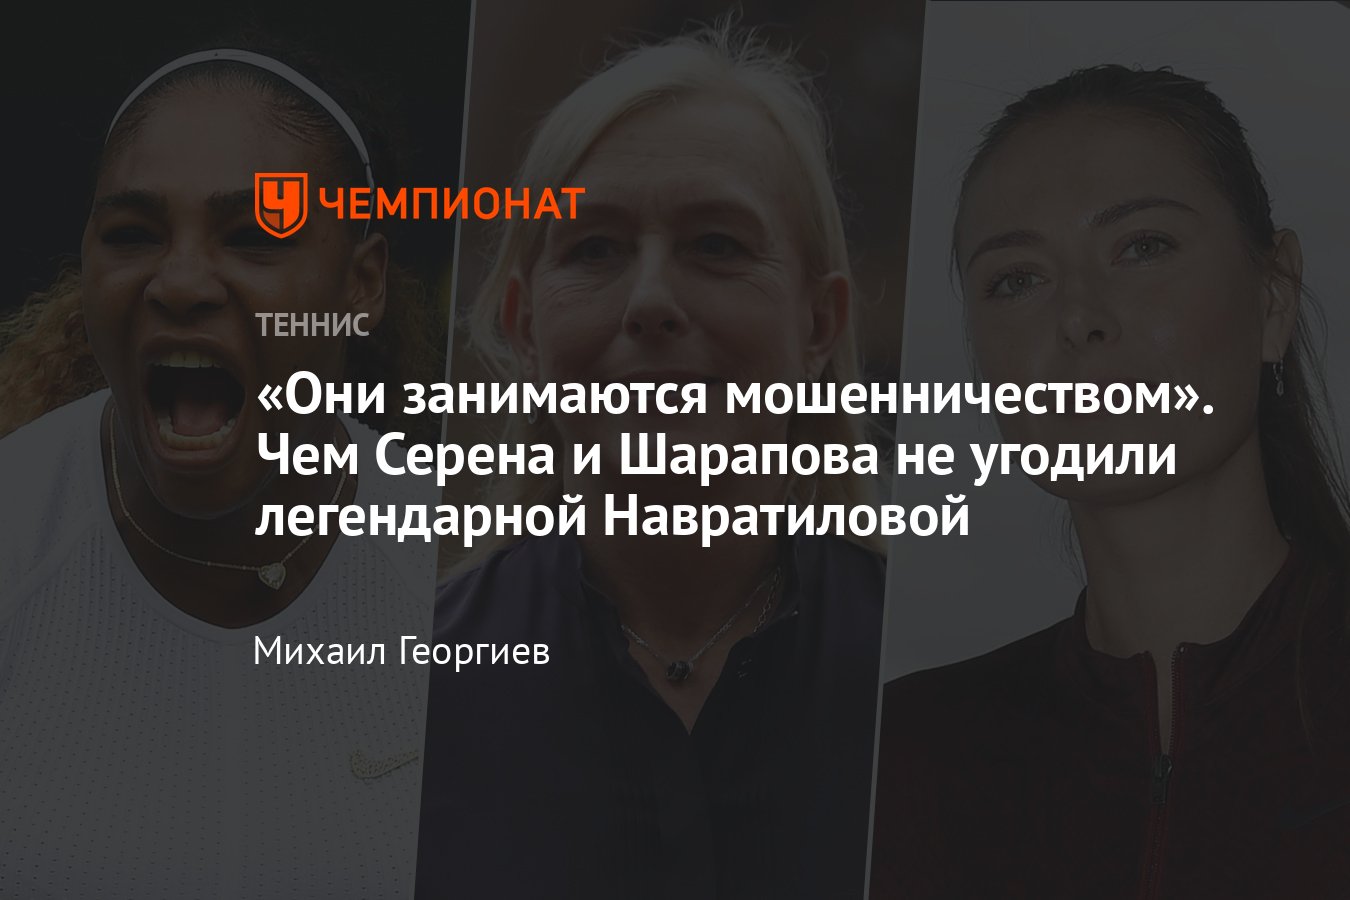 Почему женщины стонут и кричат во время занятия сексом » Лента новостей Казахстана - luchistii-sudak.ru